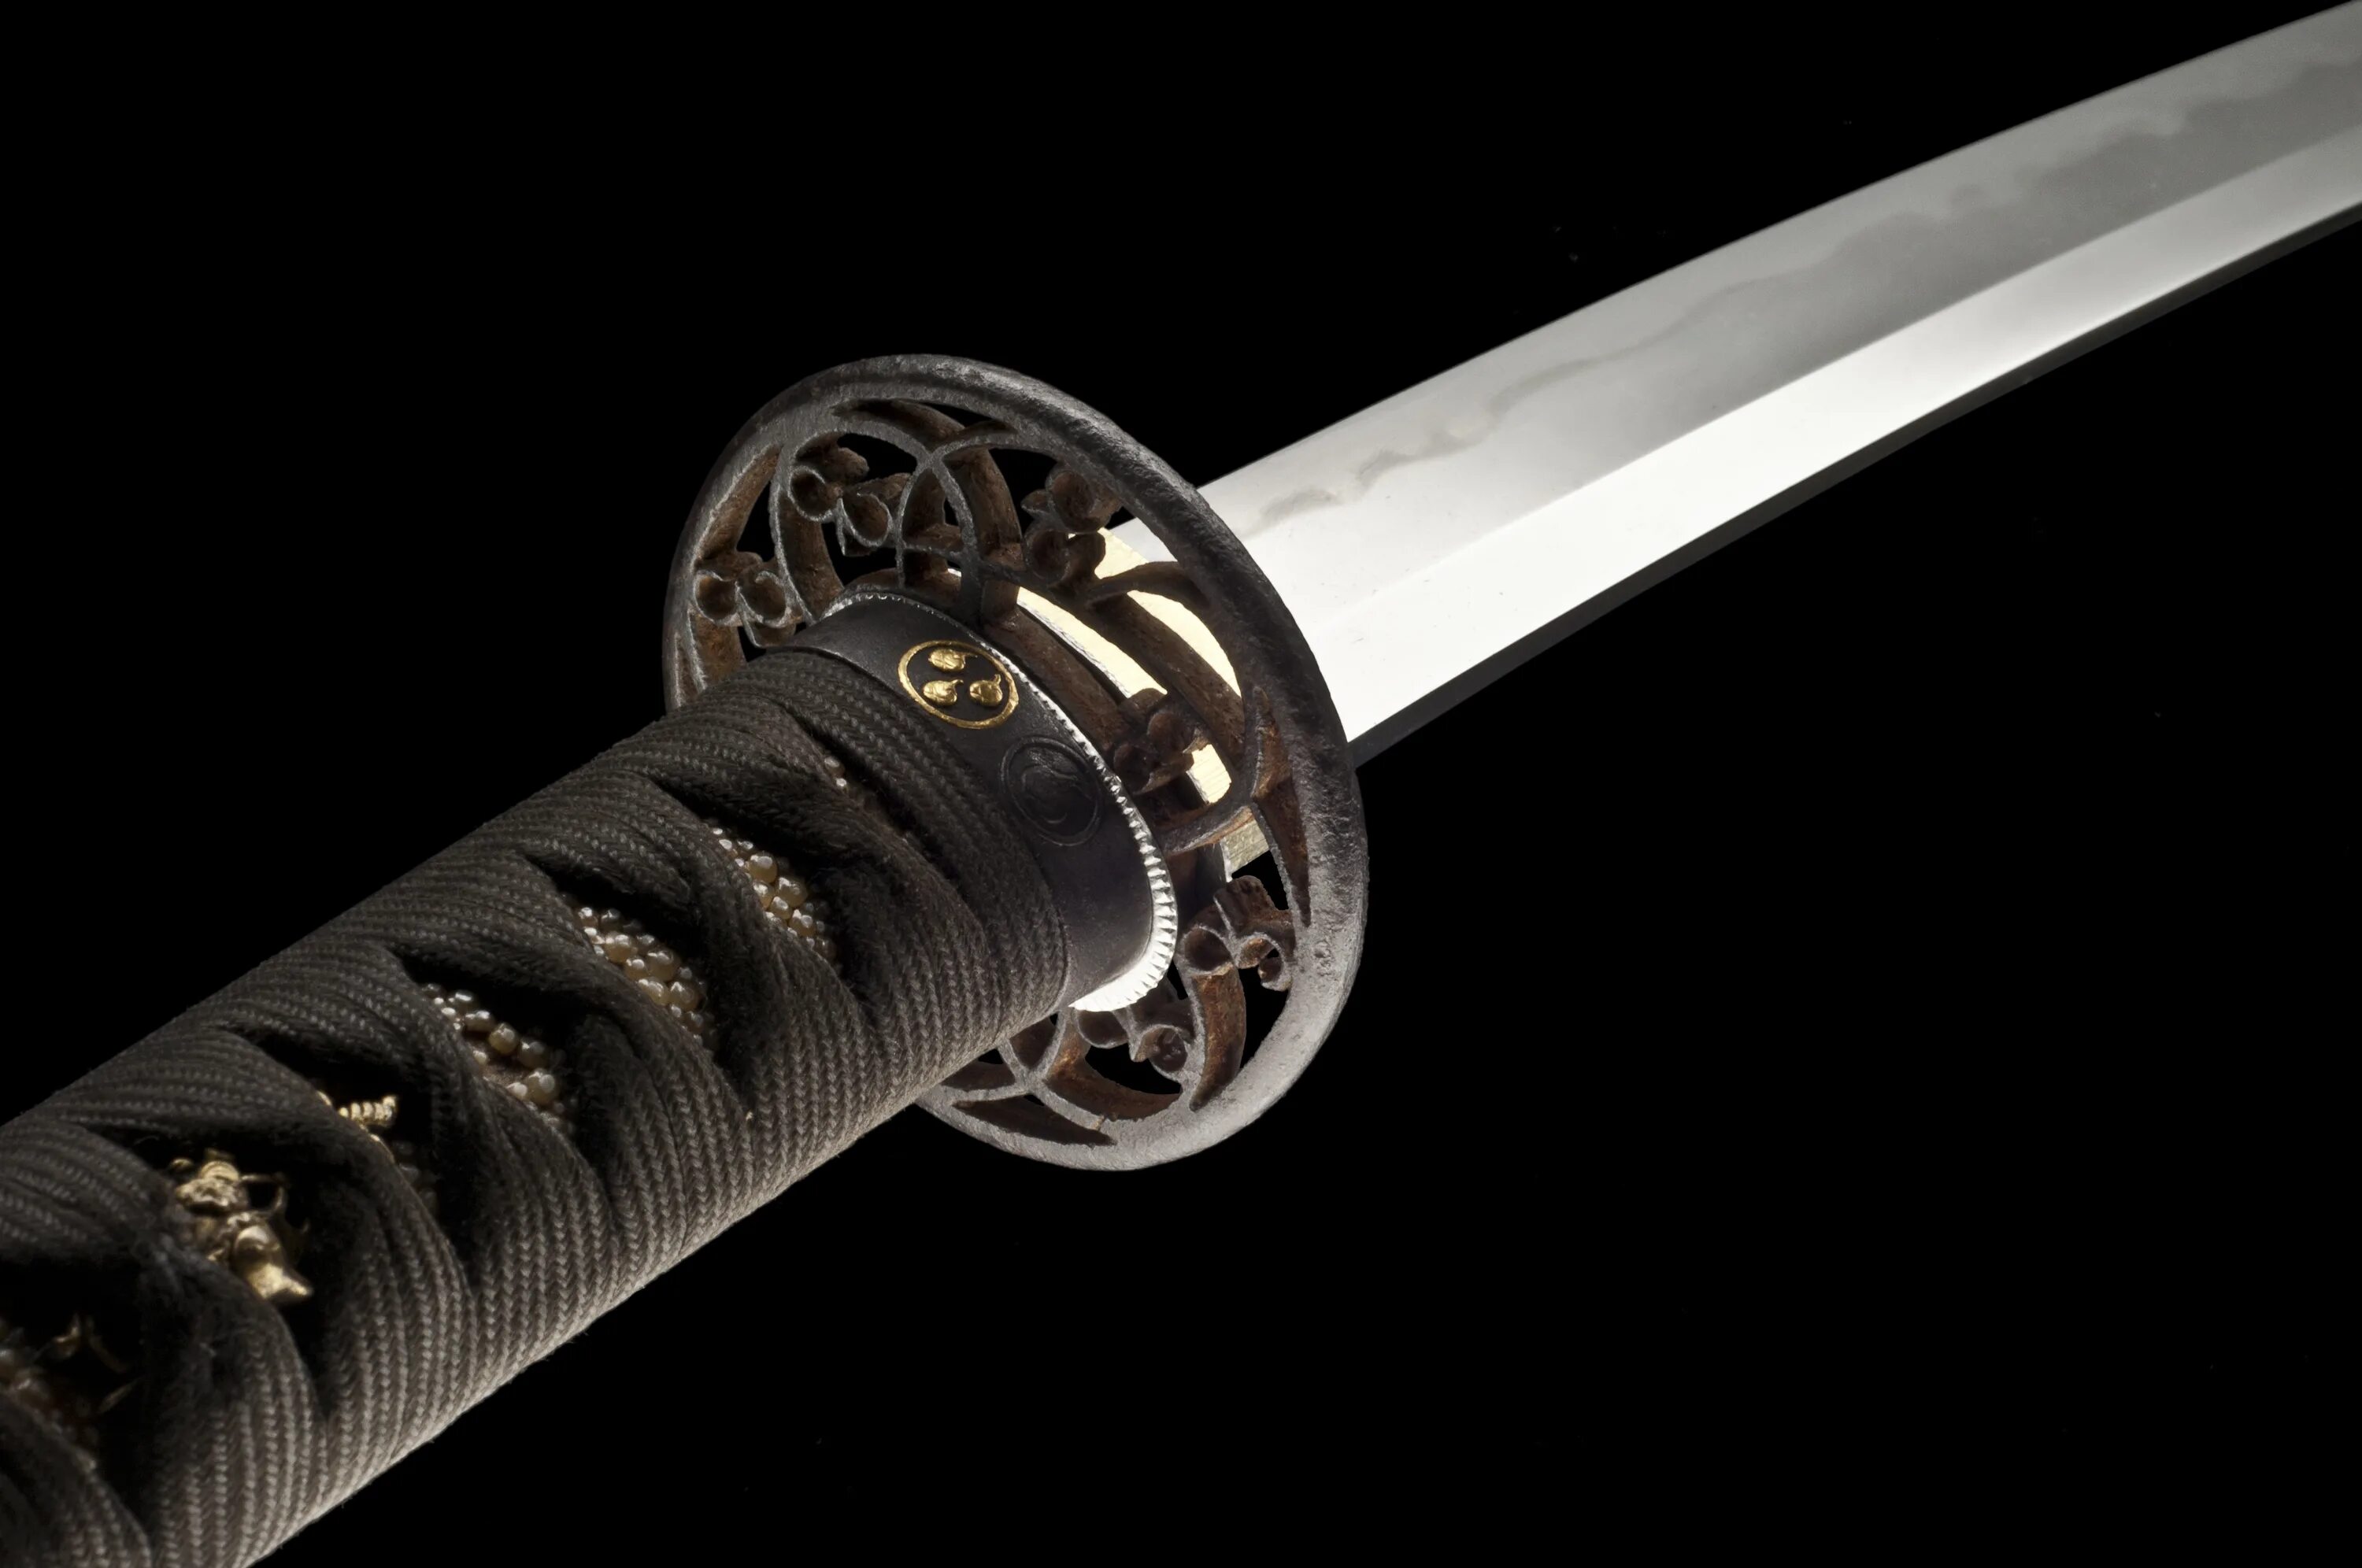 Фото мечите. Катана и вакидзаси. Вакидзаси "черный дракон". Японский самурайский меч 16 века Wakizashi. Японский меч катана 16 века.